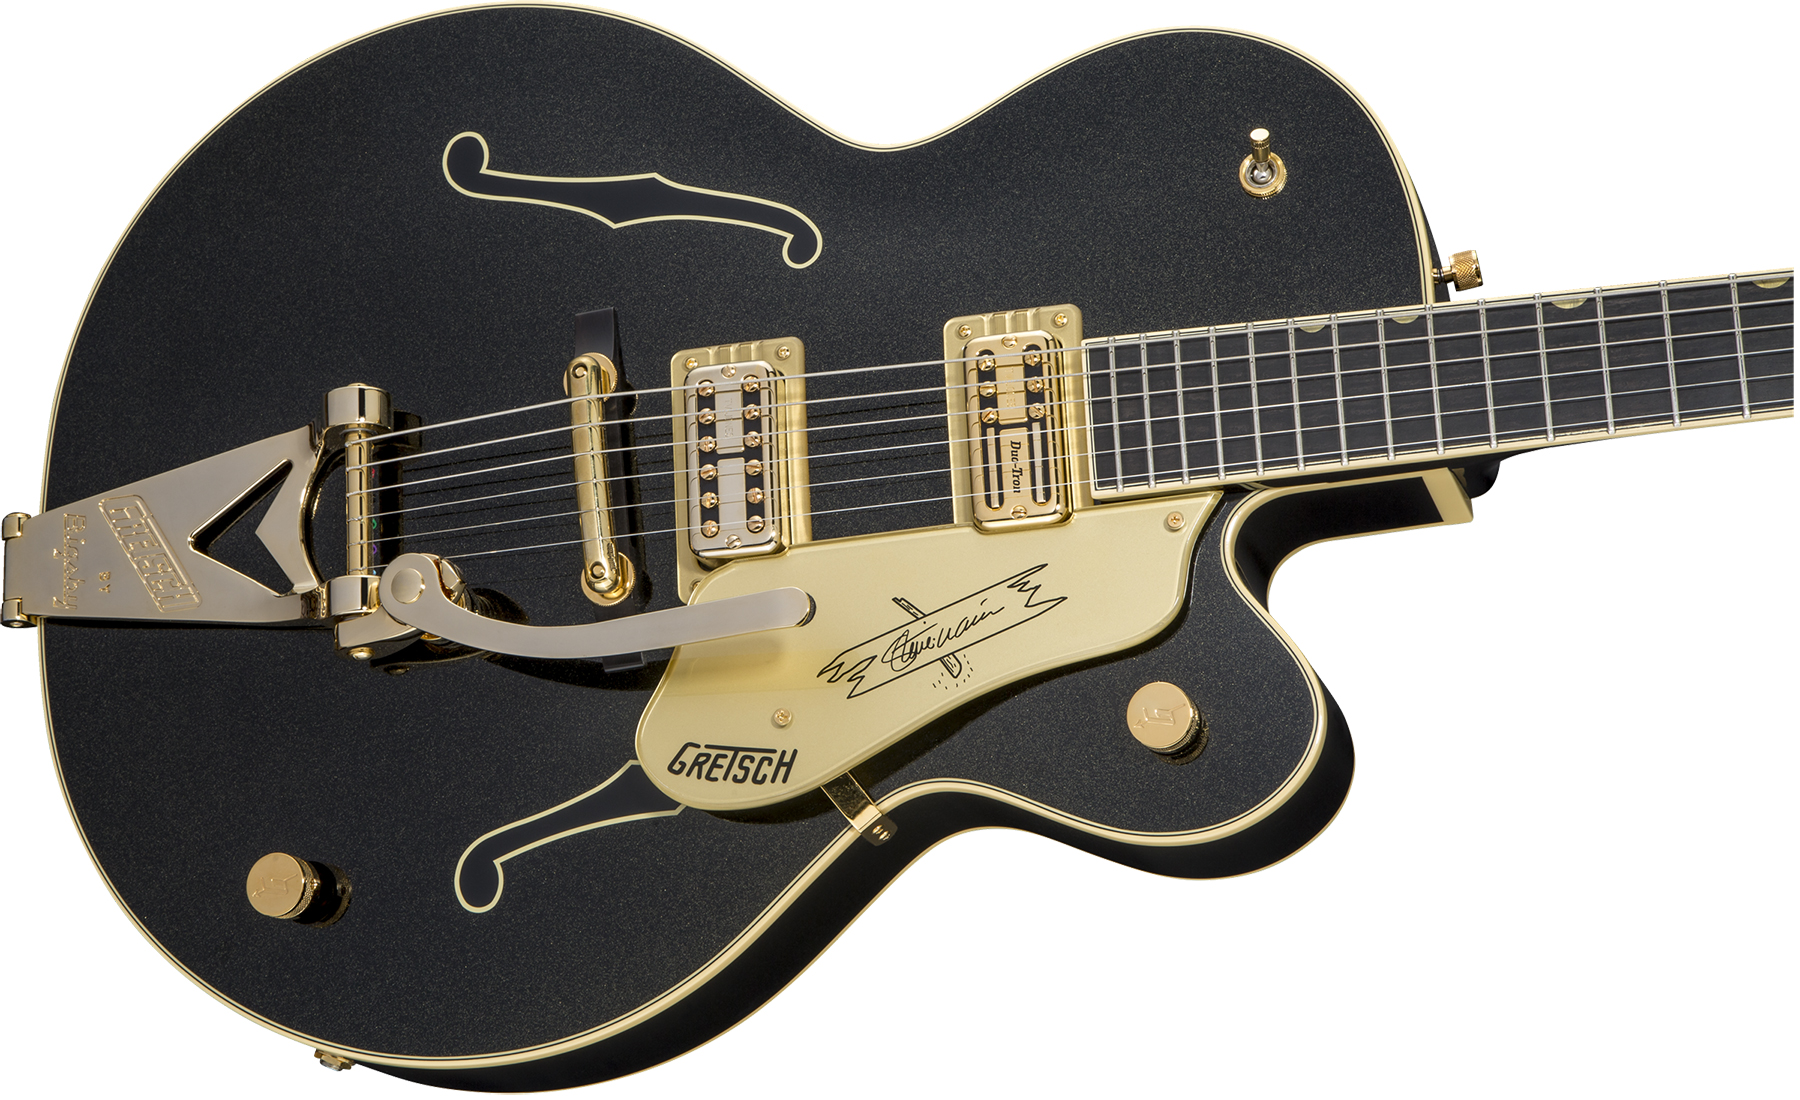 Gretsch Steve Wariner G6120t-sw Nashville Japon Signature Hh Bigsby Eb - Magic Black - Guitare Électrique 1/2 Caisse - Variation 2